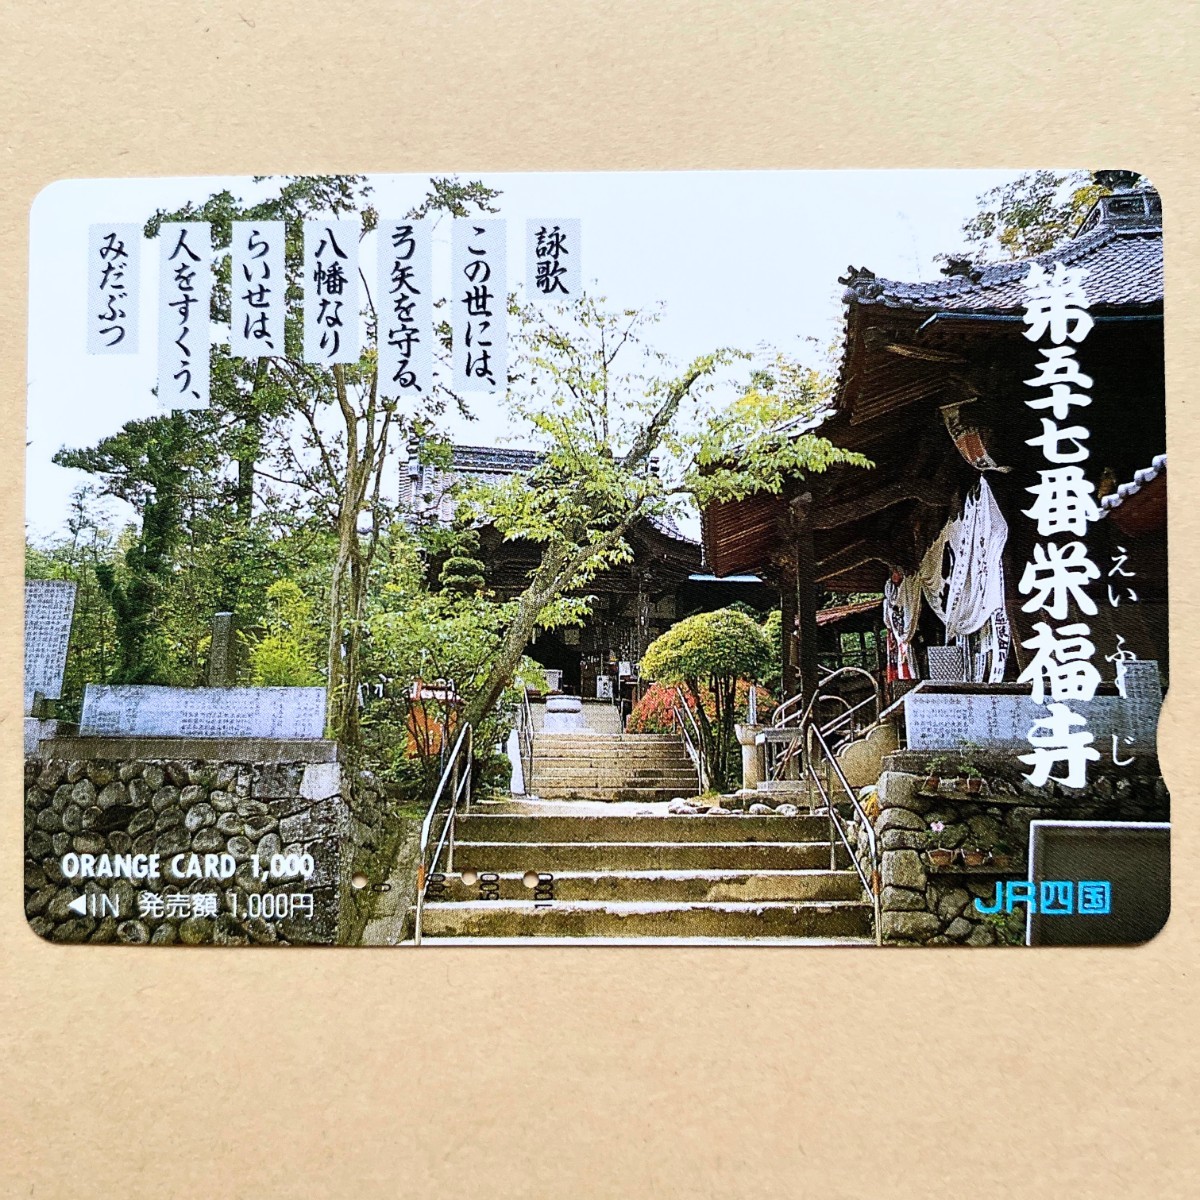 【使用済】 オレンジカード JR四国 第五十七番 栄福寺_画像1